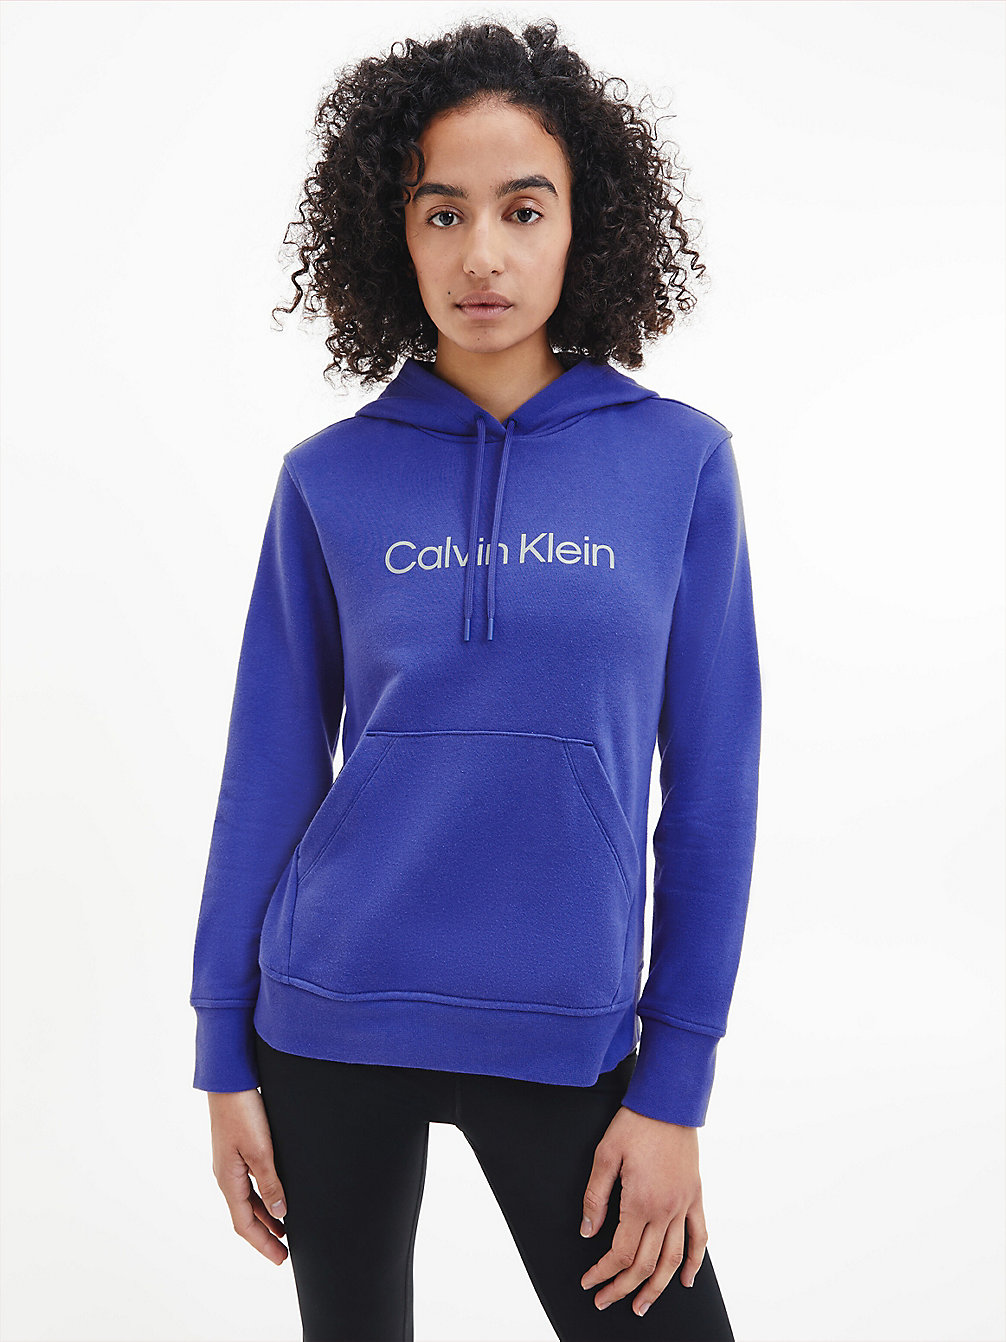 CLEMATIS BLUE Hoodie Van Badstofkatoen Met Logo undefined dames Calvin Klein